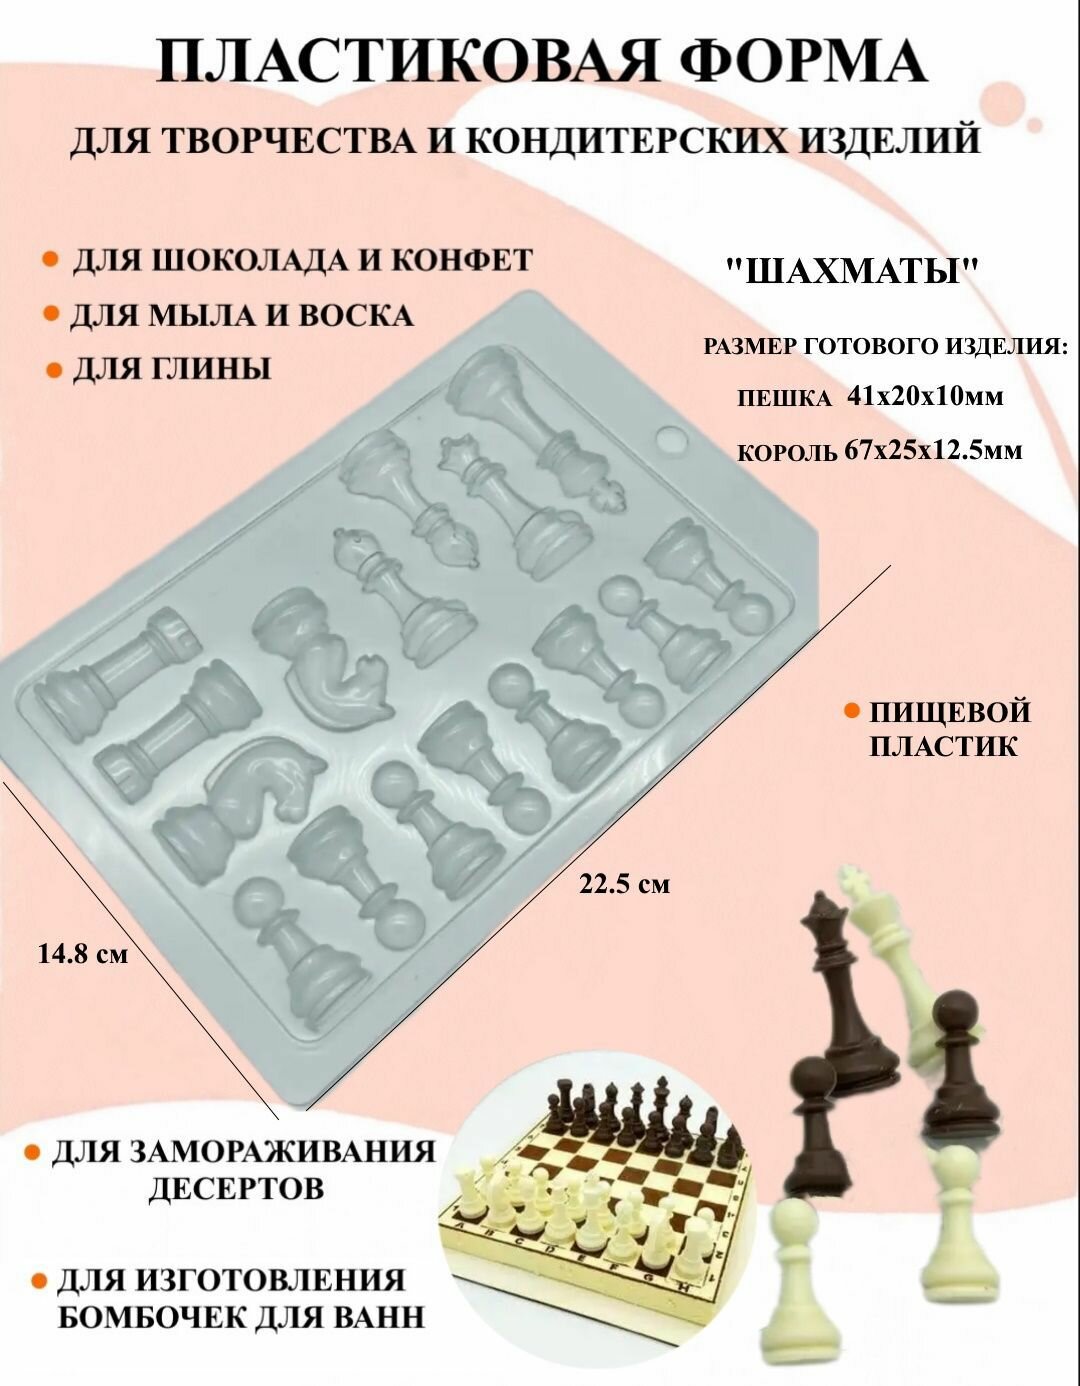 Пластиковая форма Шахматы Б2400, для творчества, для шоколада и желе, молд, для свечей, для мыла, для льда